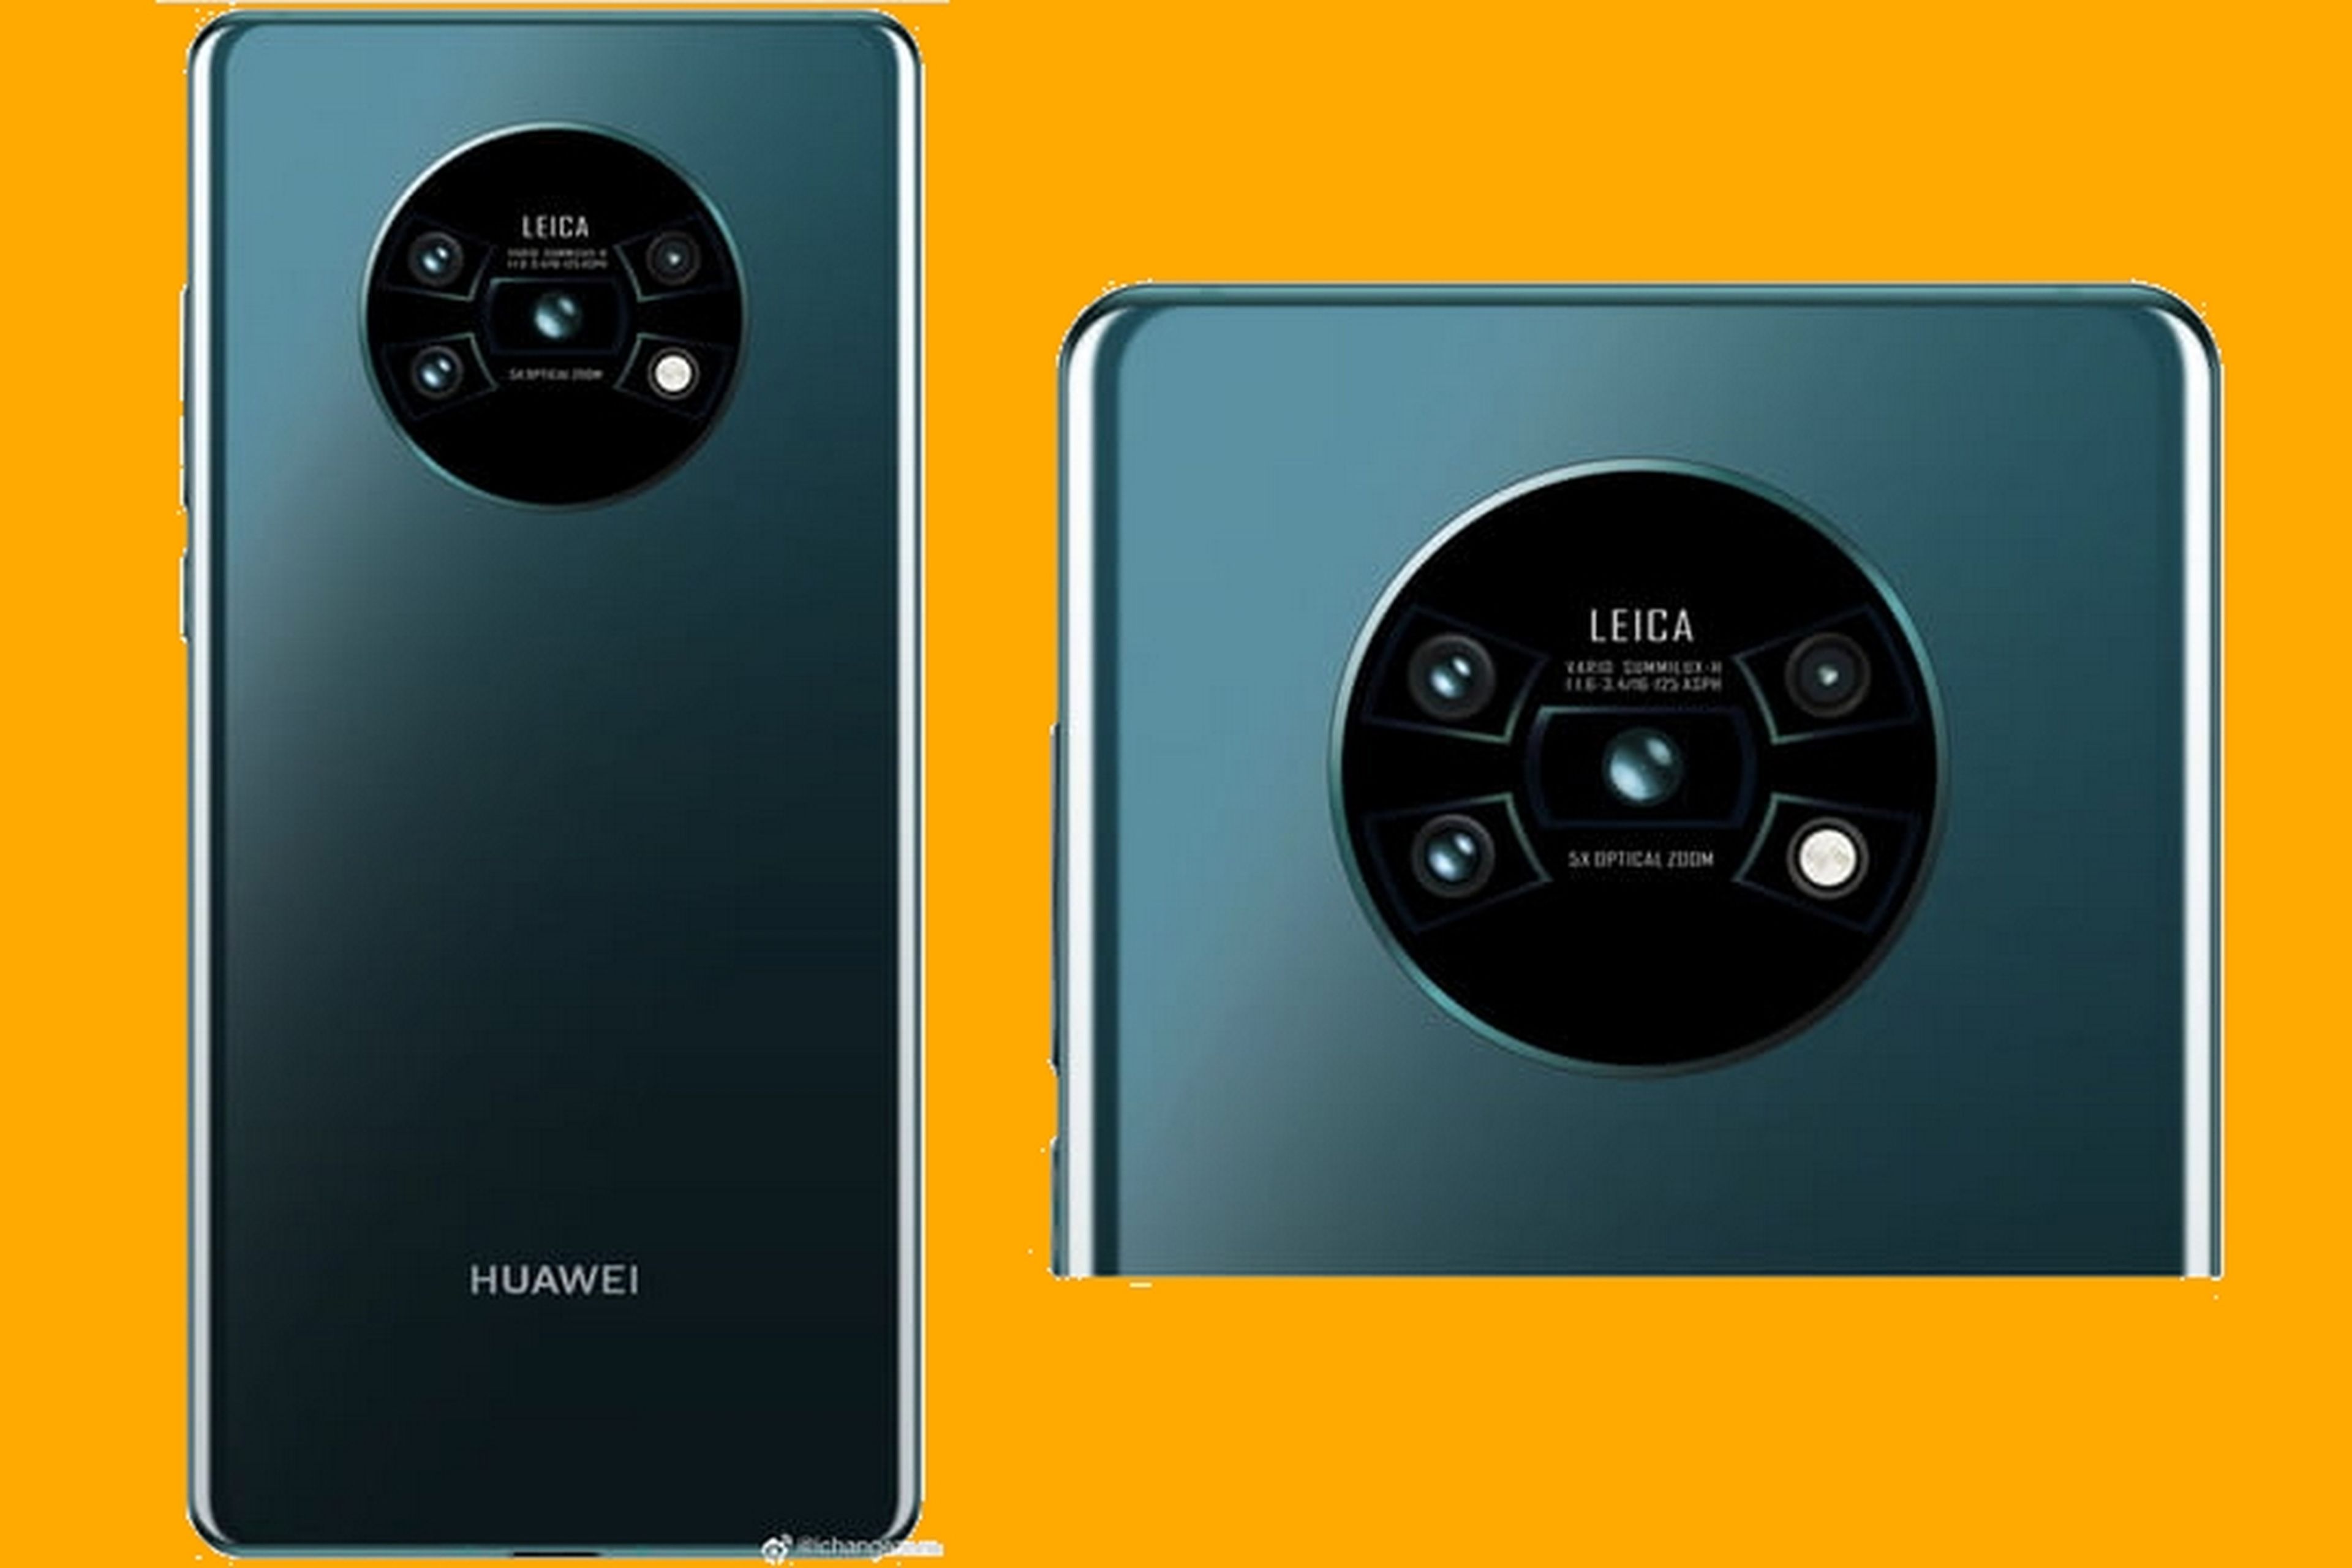 Un render del Huawei Mate 30 revela una configuración de cámara revolucionaria